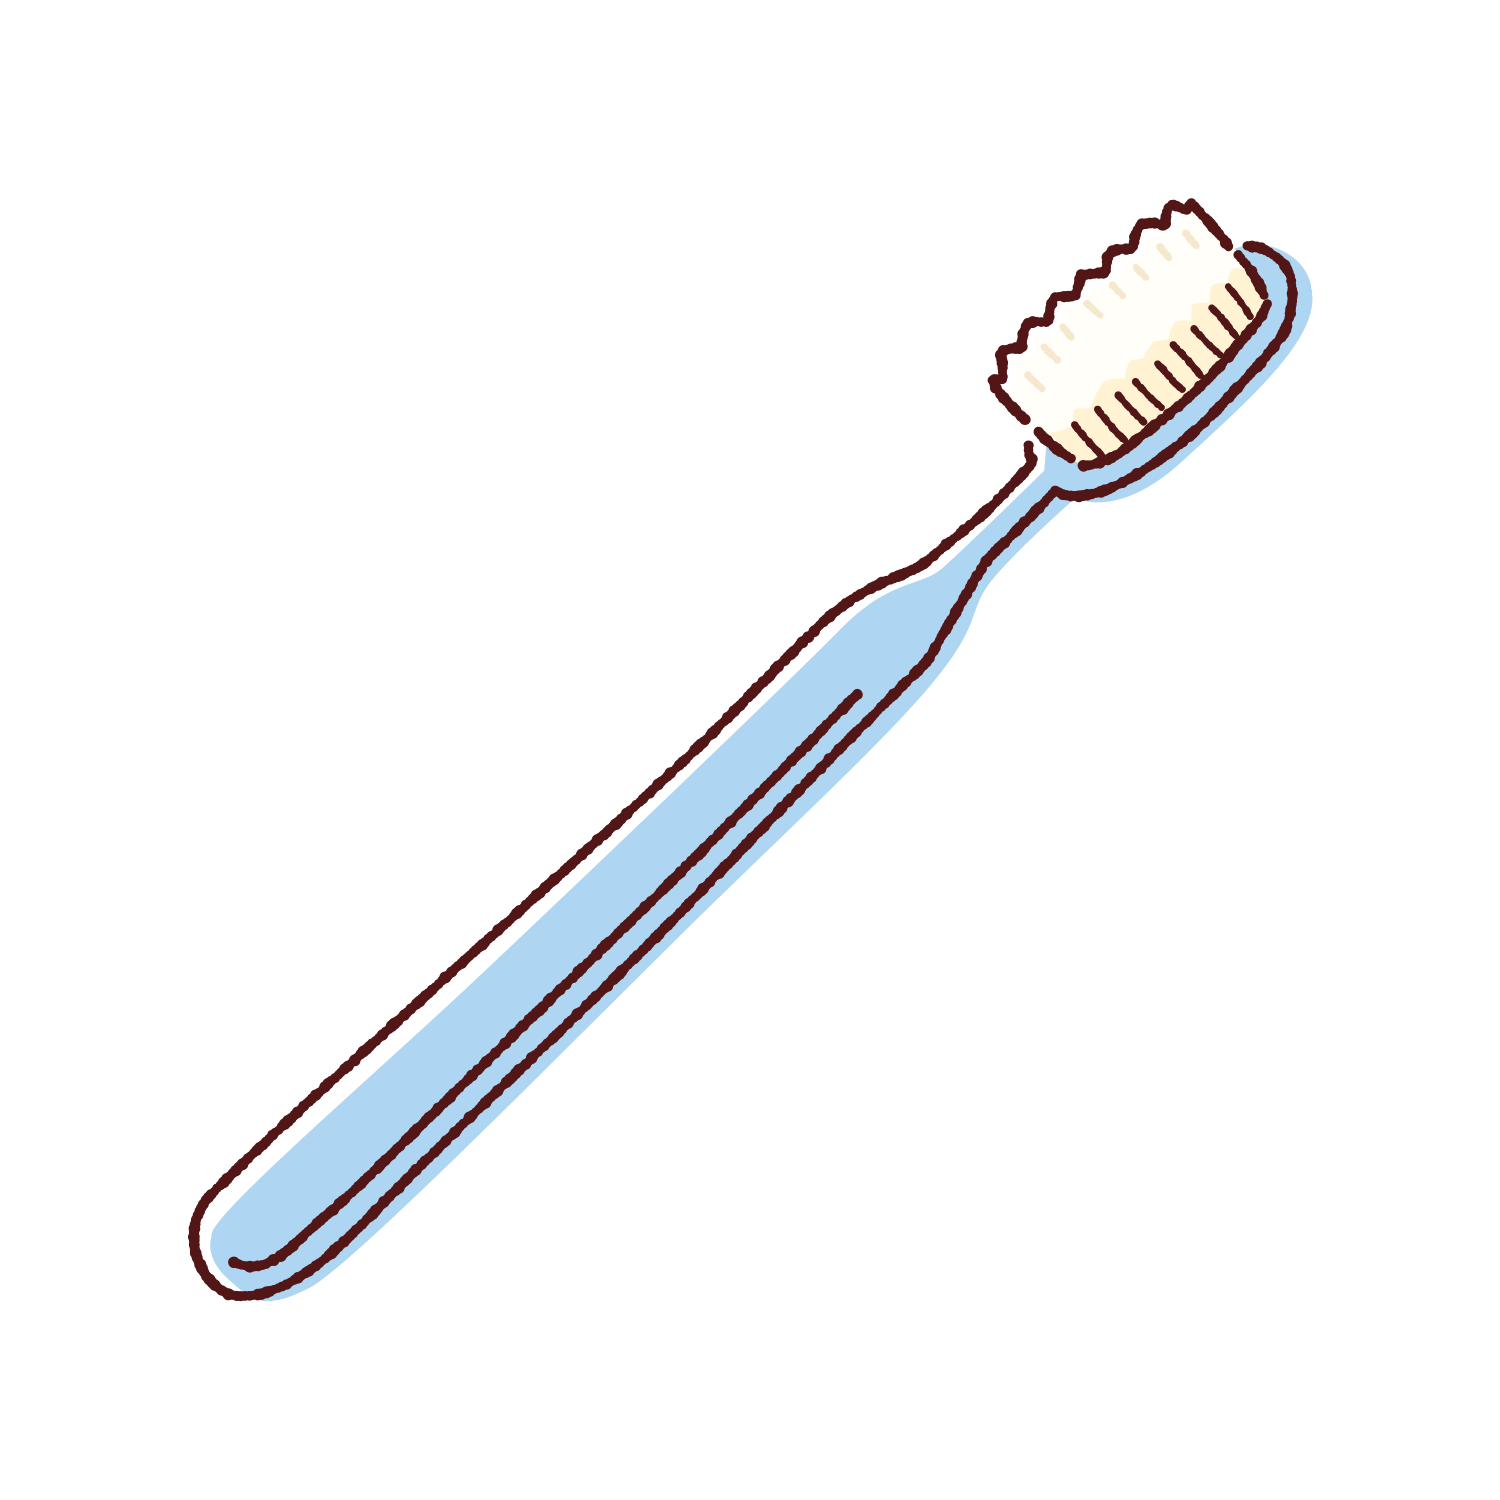 歯ブラシのイラスト